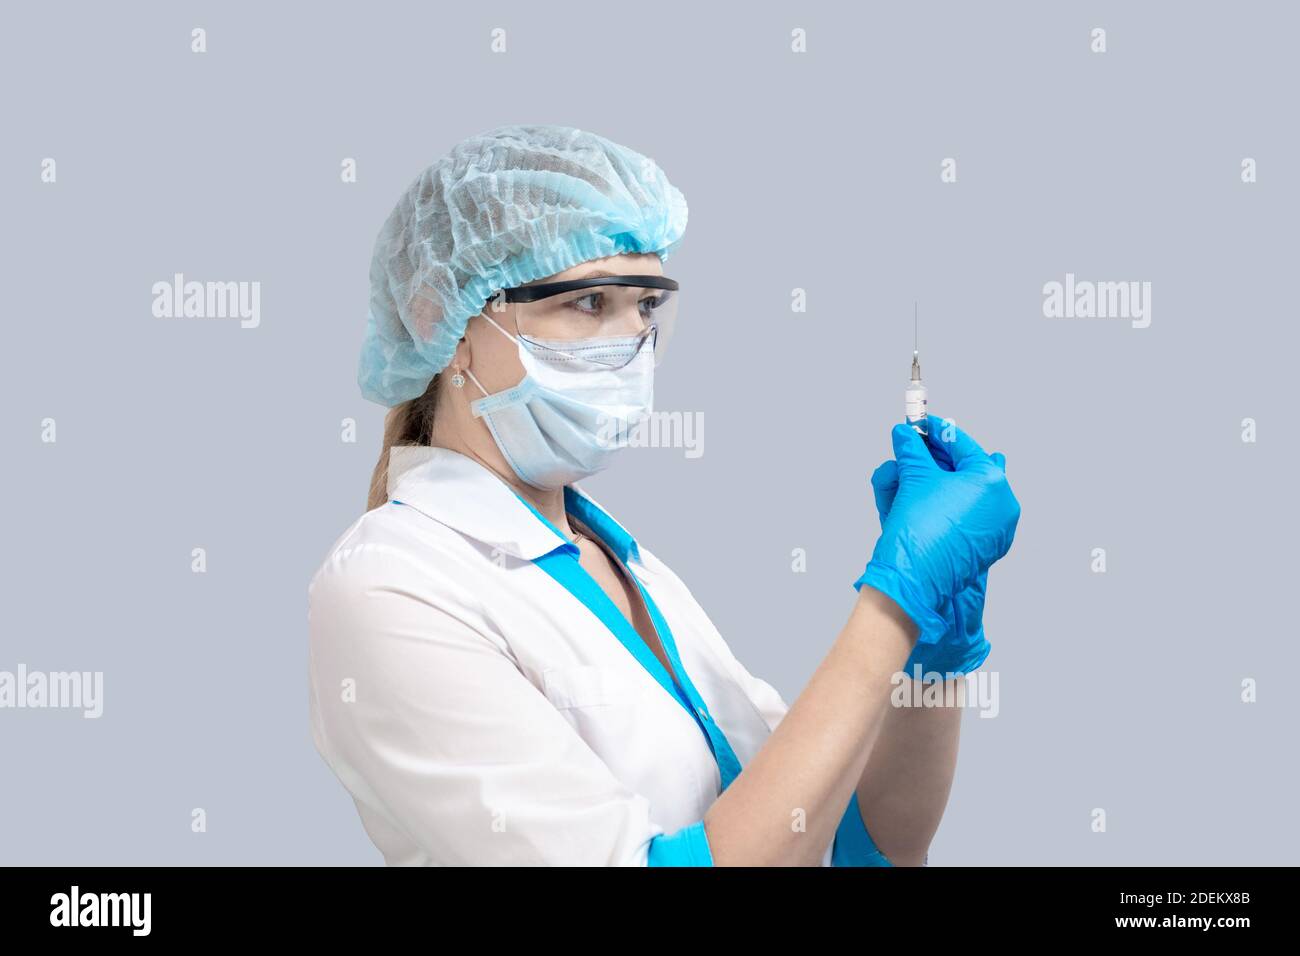 Krankenschwester auf grauem Hintergrund in Schutzmaske und Brille, hält eine Spritze mit einem Impfstoff. Medizin und Gesundheitswesen. Coronavirus-Behandlung. Stockfoto